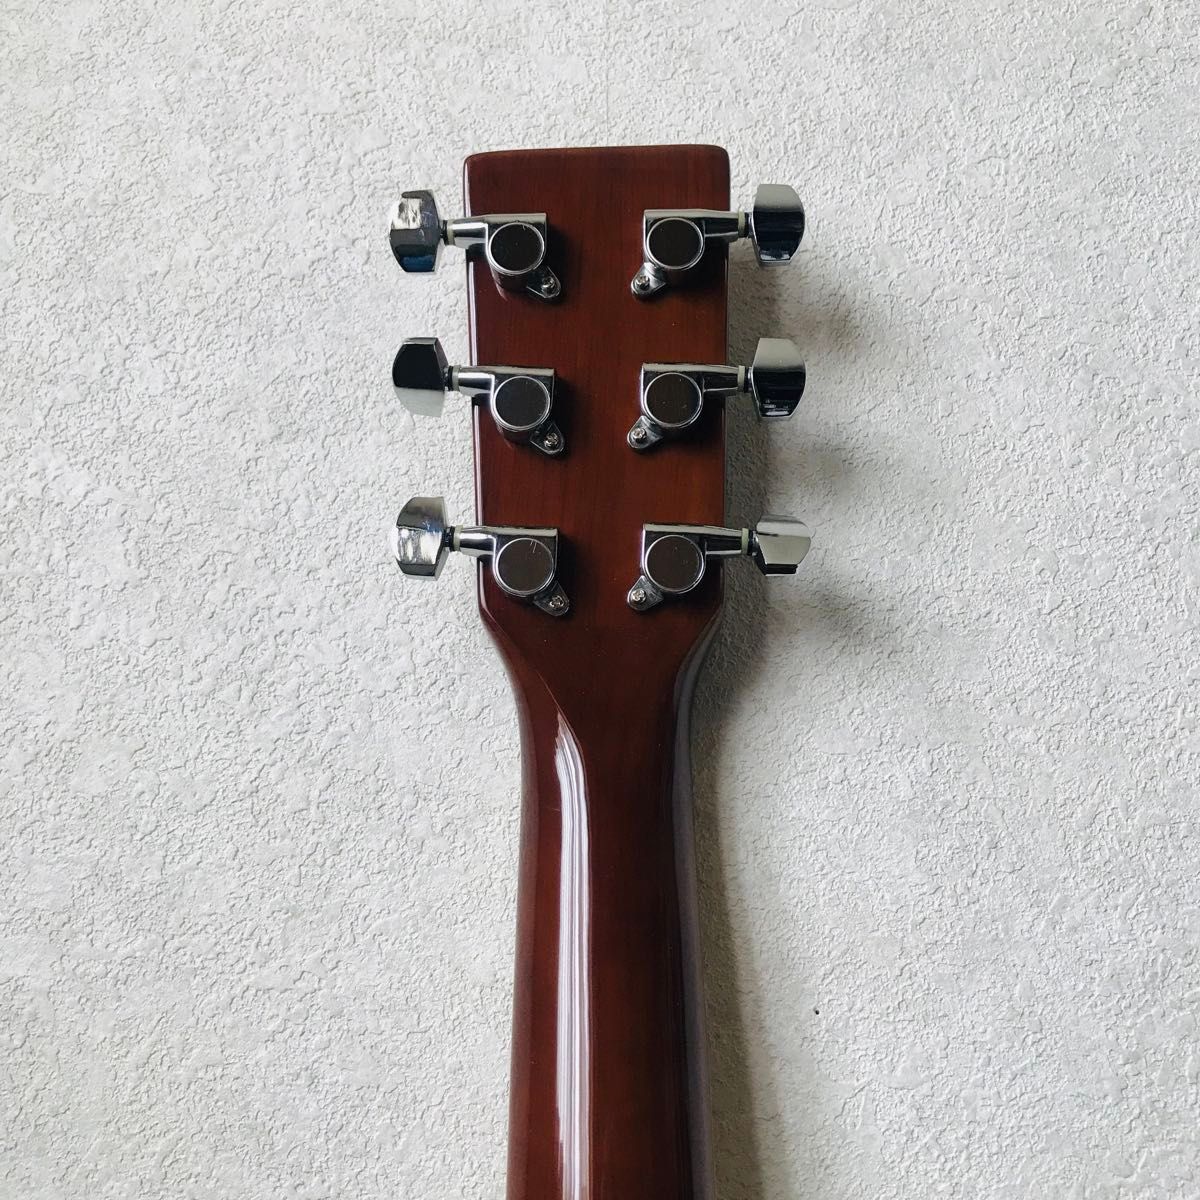 【美品】mavis　メイビス　アコースティックギター　MF-500　ソフトケース